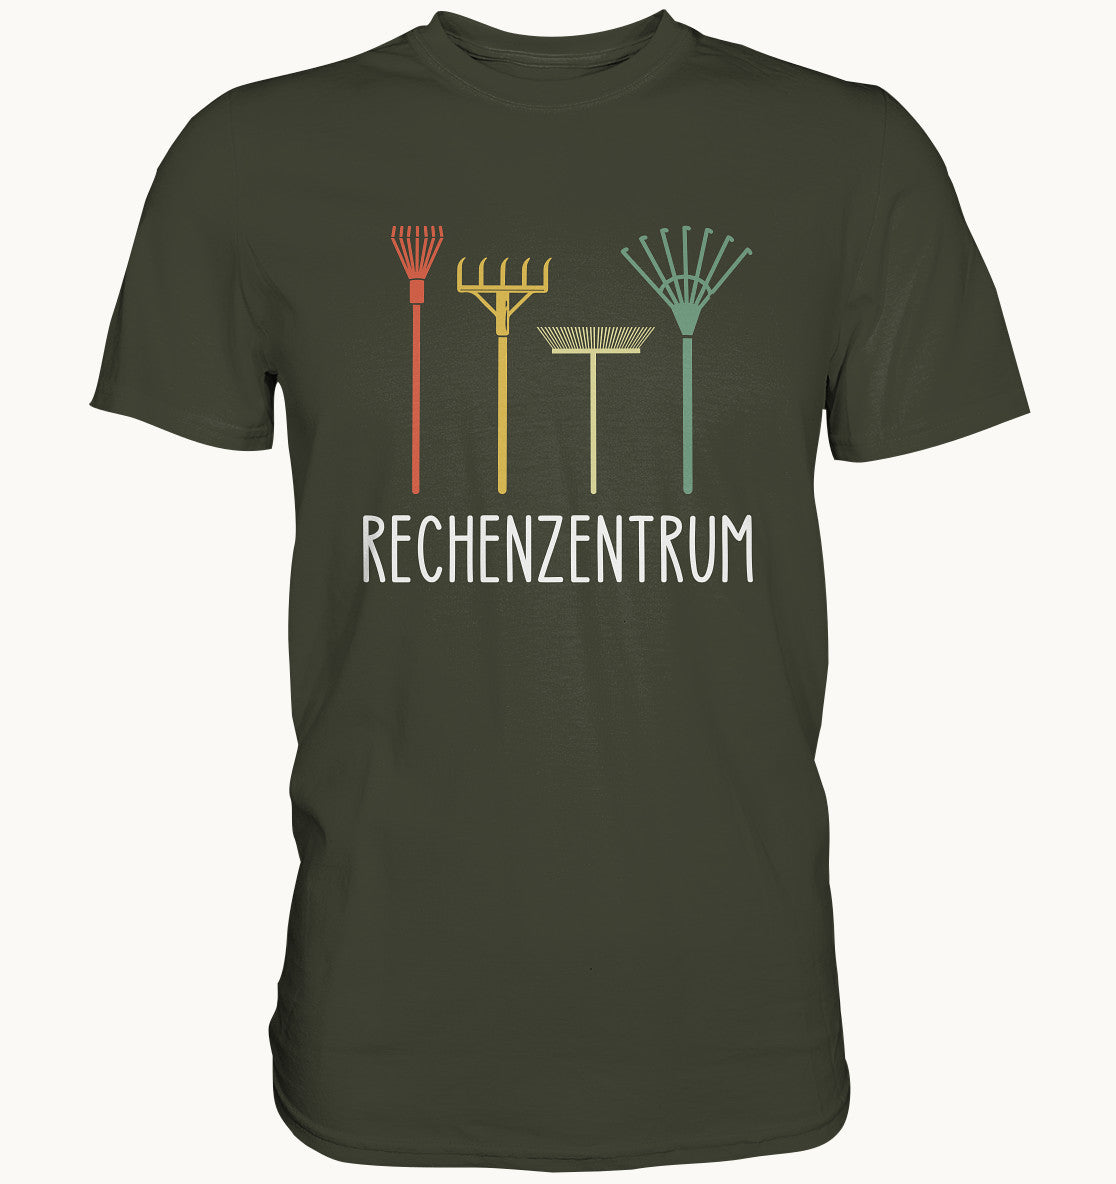 Rechenzentrum - Premium Shirt